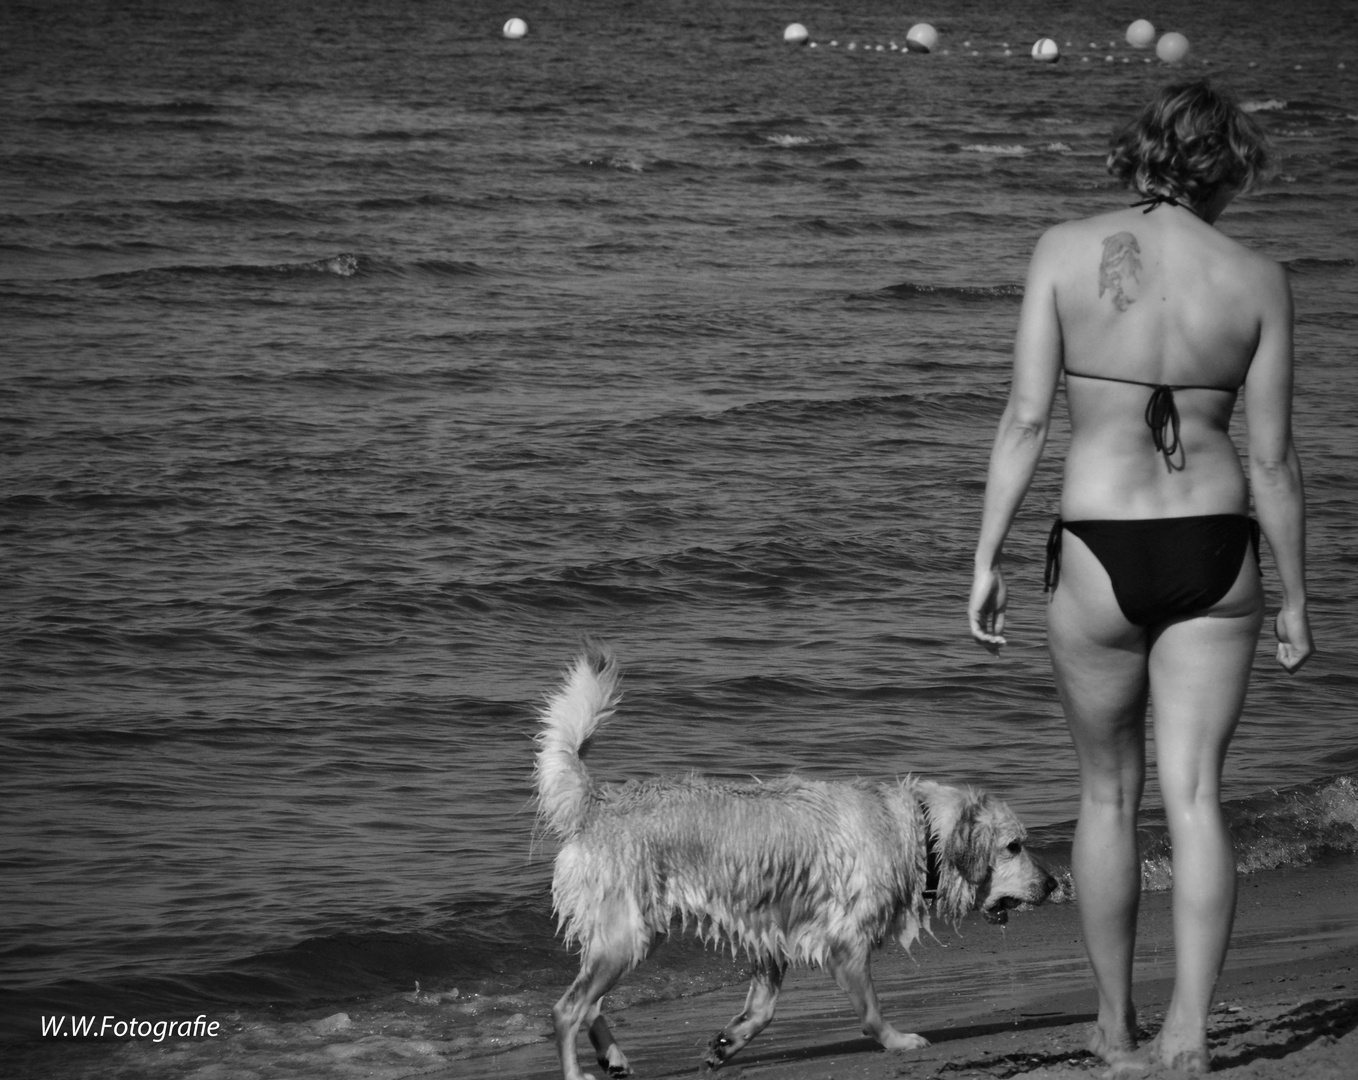 Frau mit Hund am Strand in schwarz/weiß